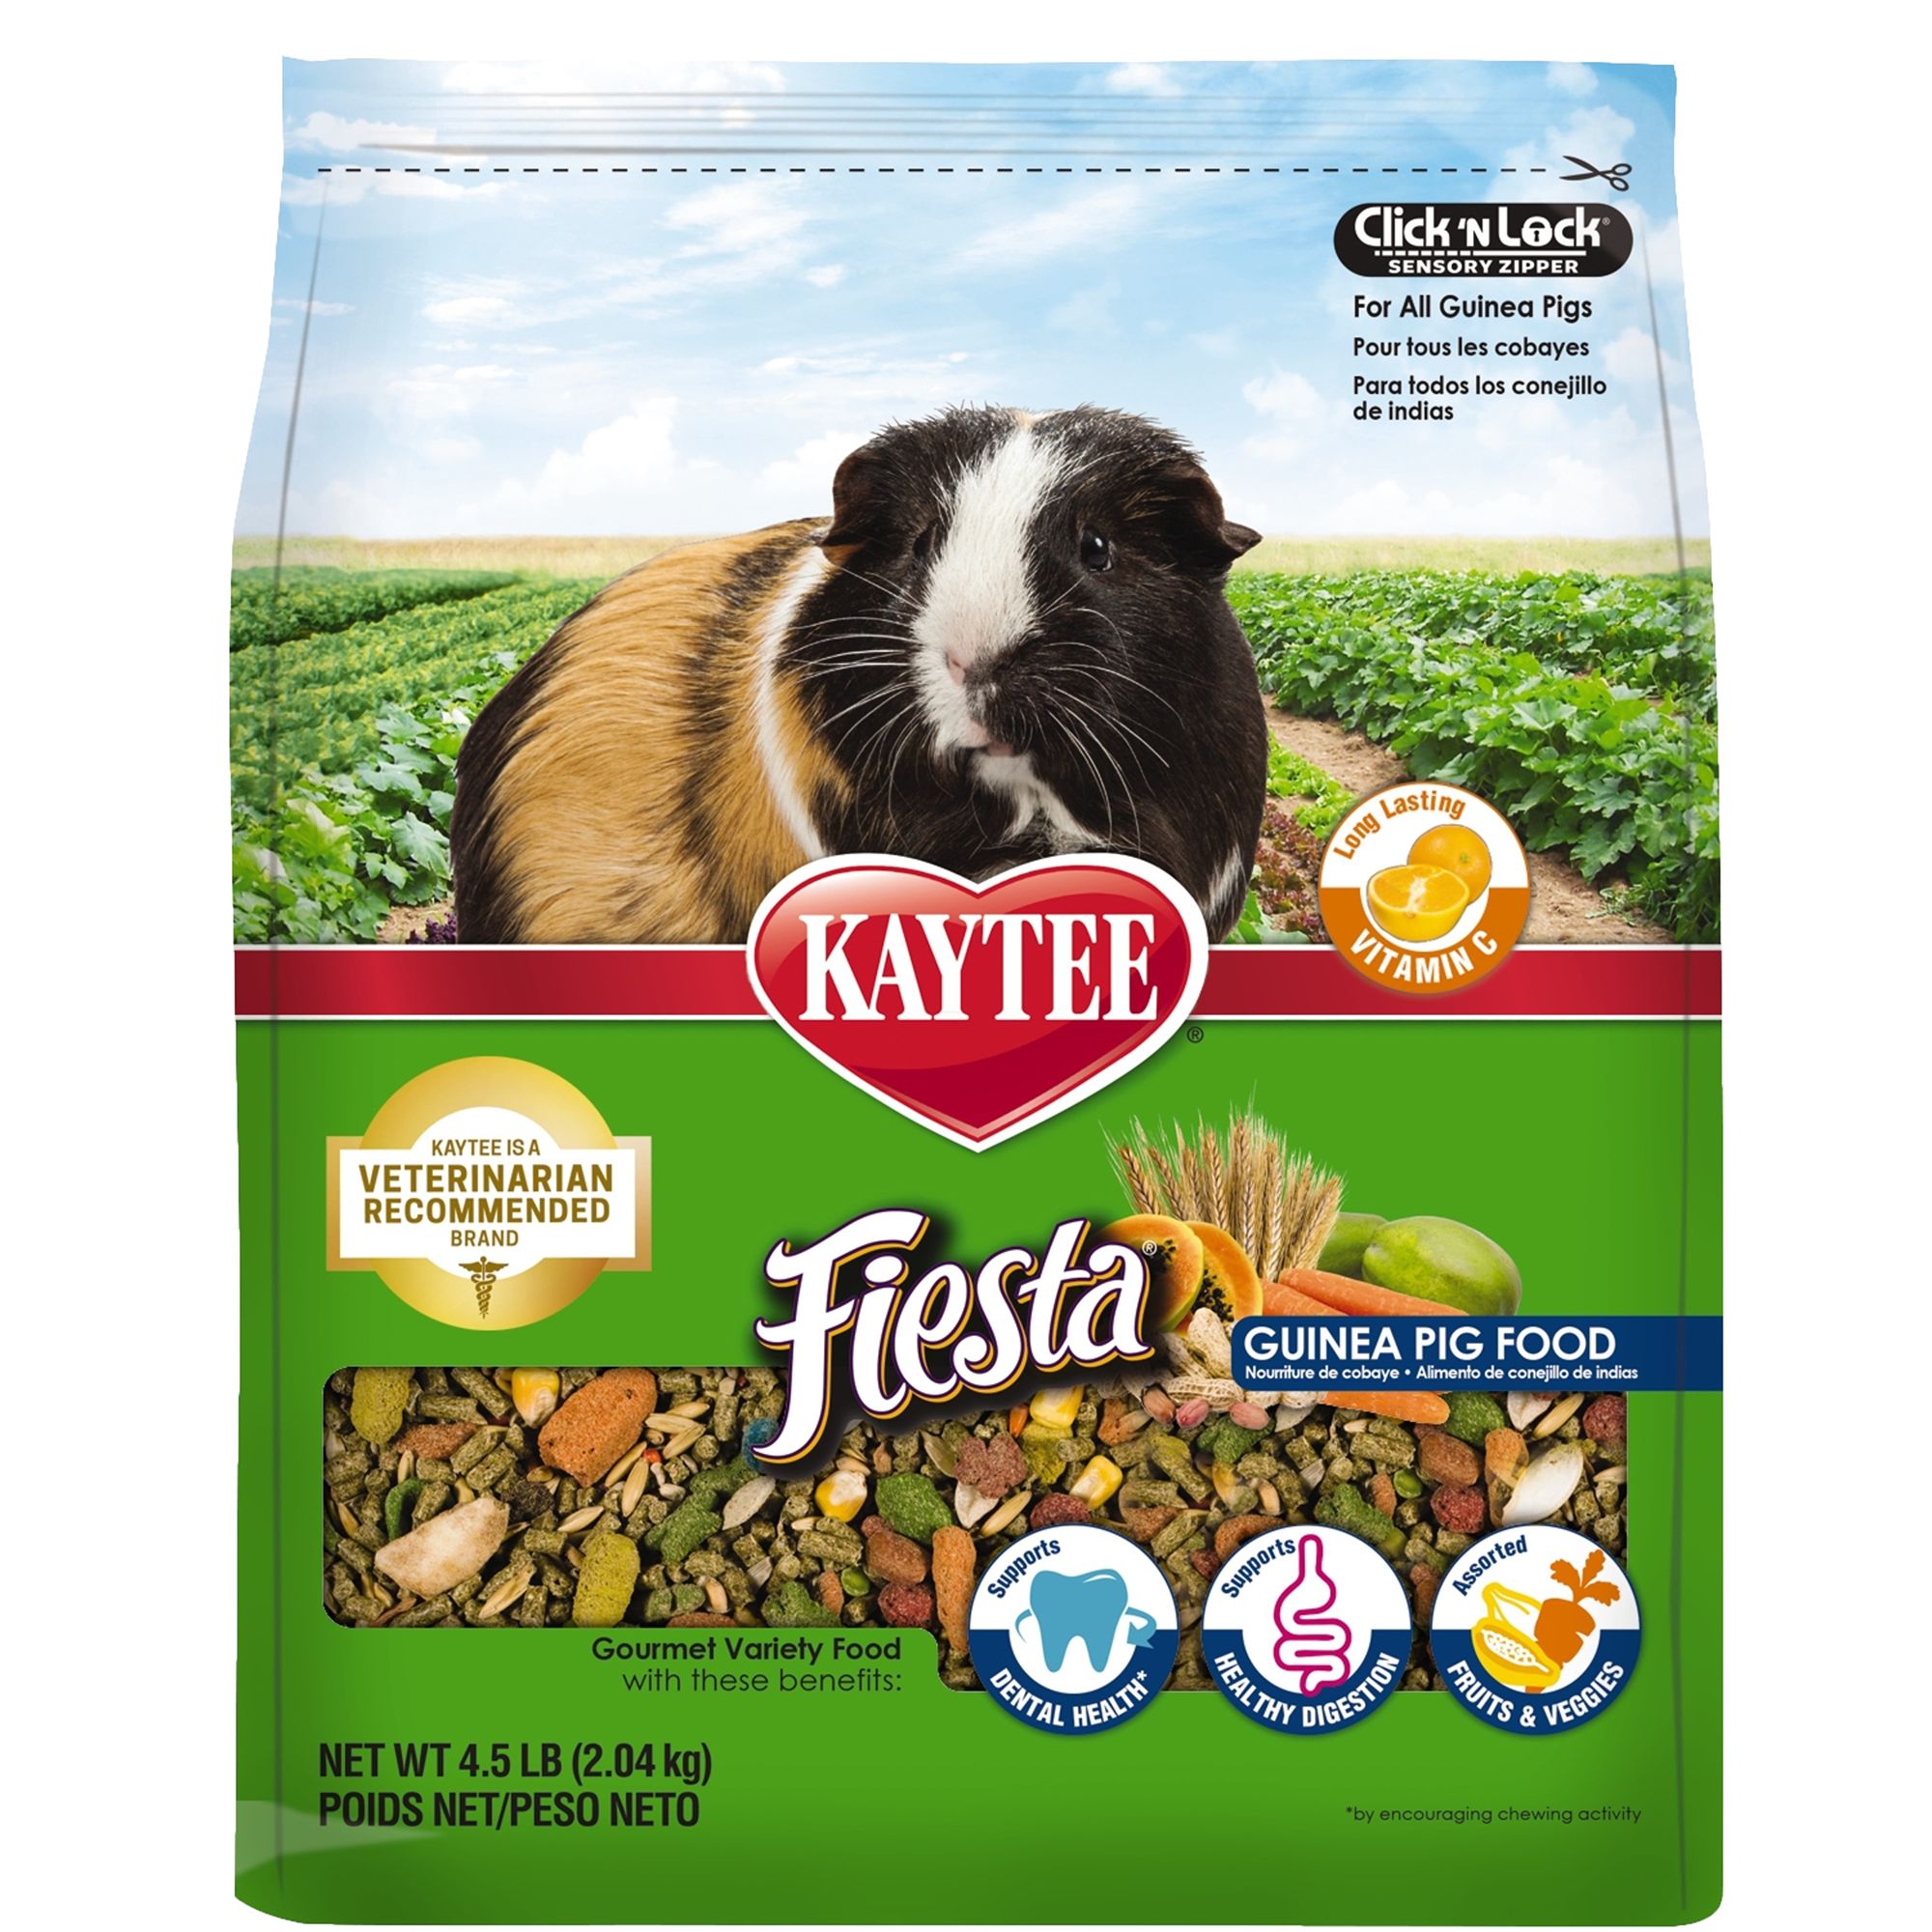 kaytee guinea pig food